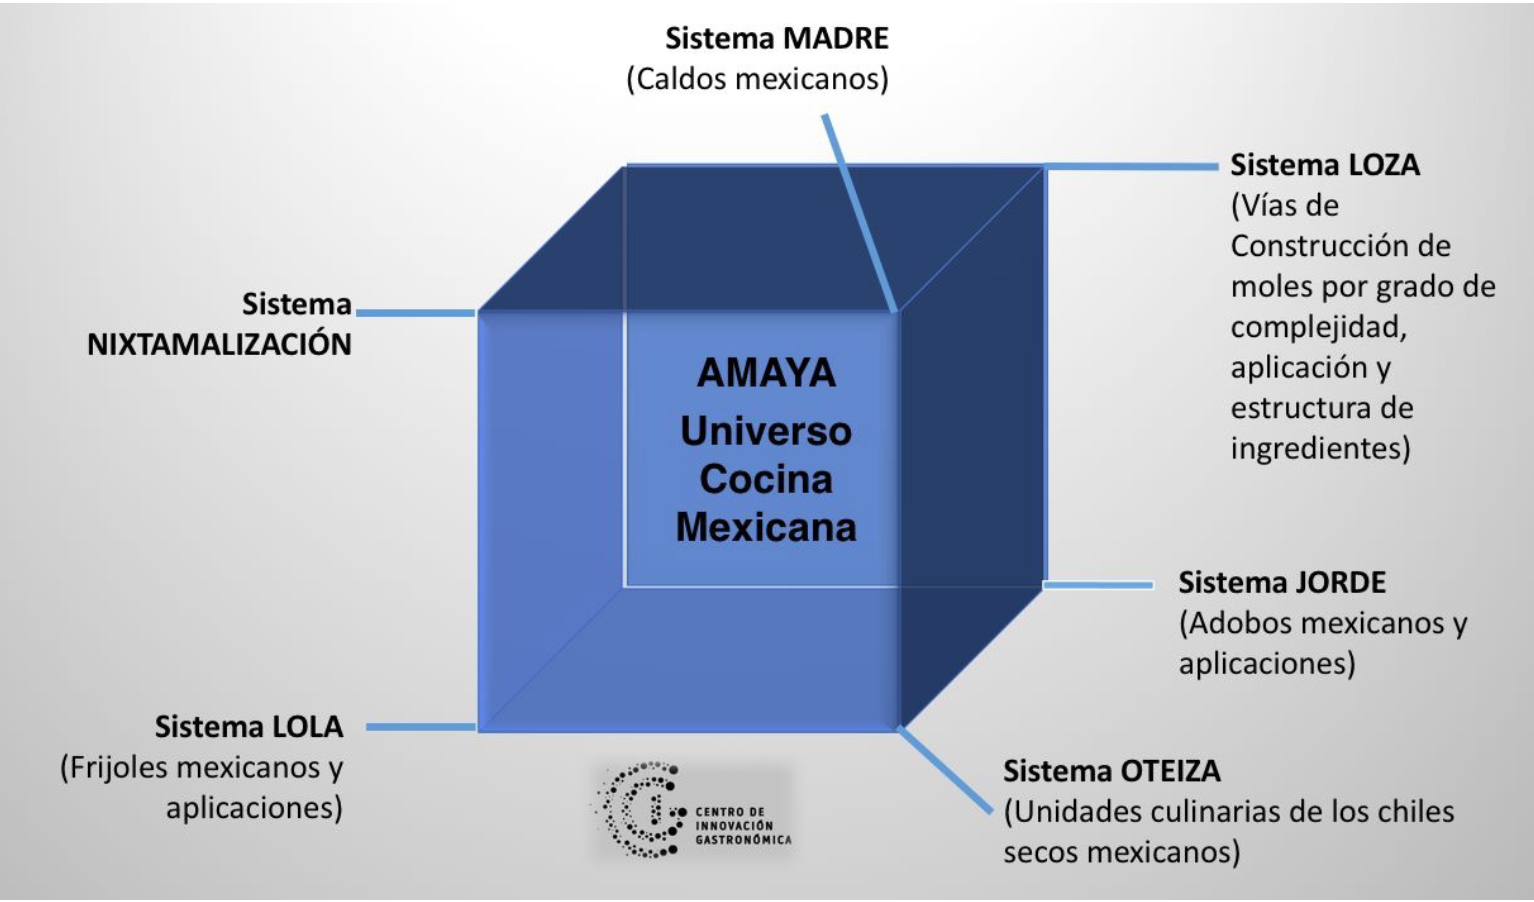 Cuadro de AMAYA Universo cocina mexicana